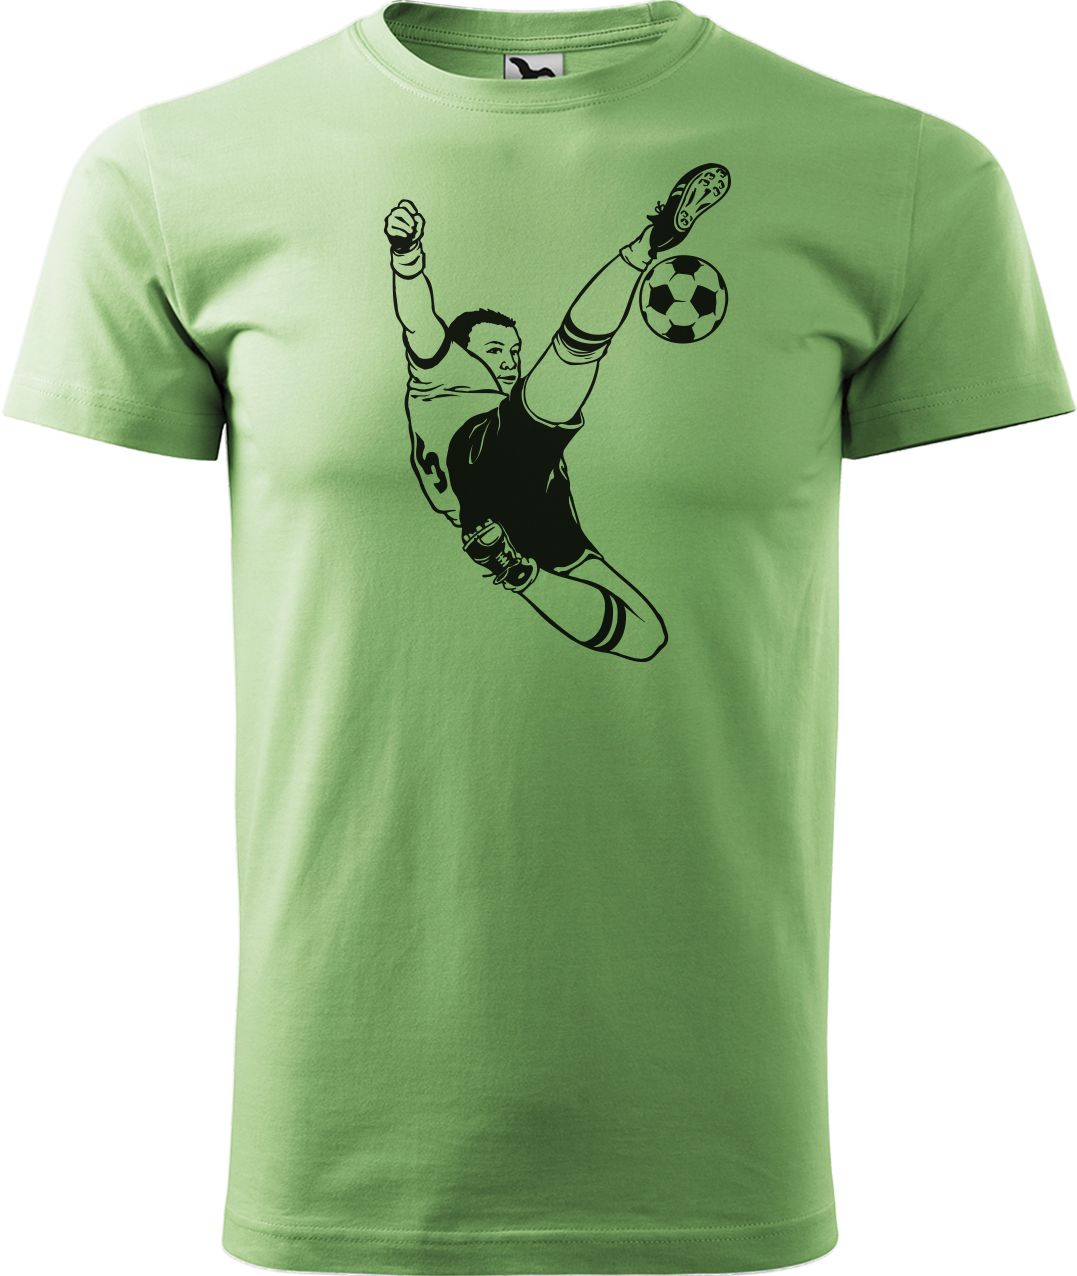 Tričko pro fotbalistu - Fotbalista s míčem Velikost: M, Barva: Trávově zelená (39)